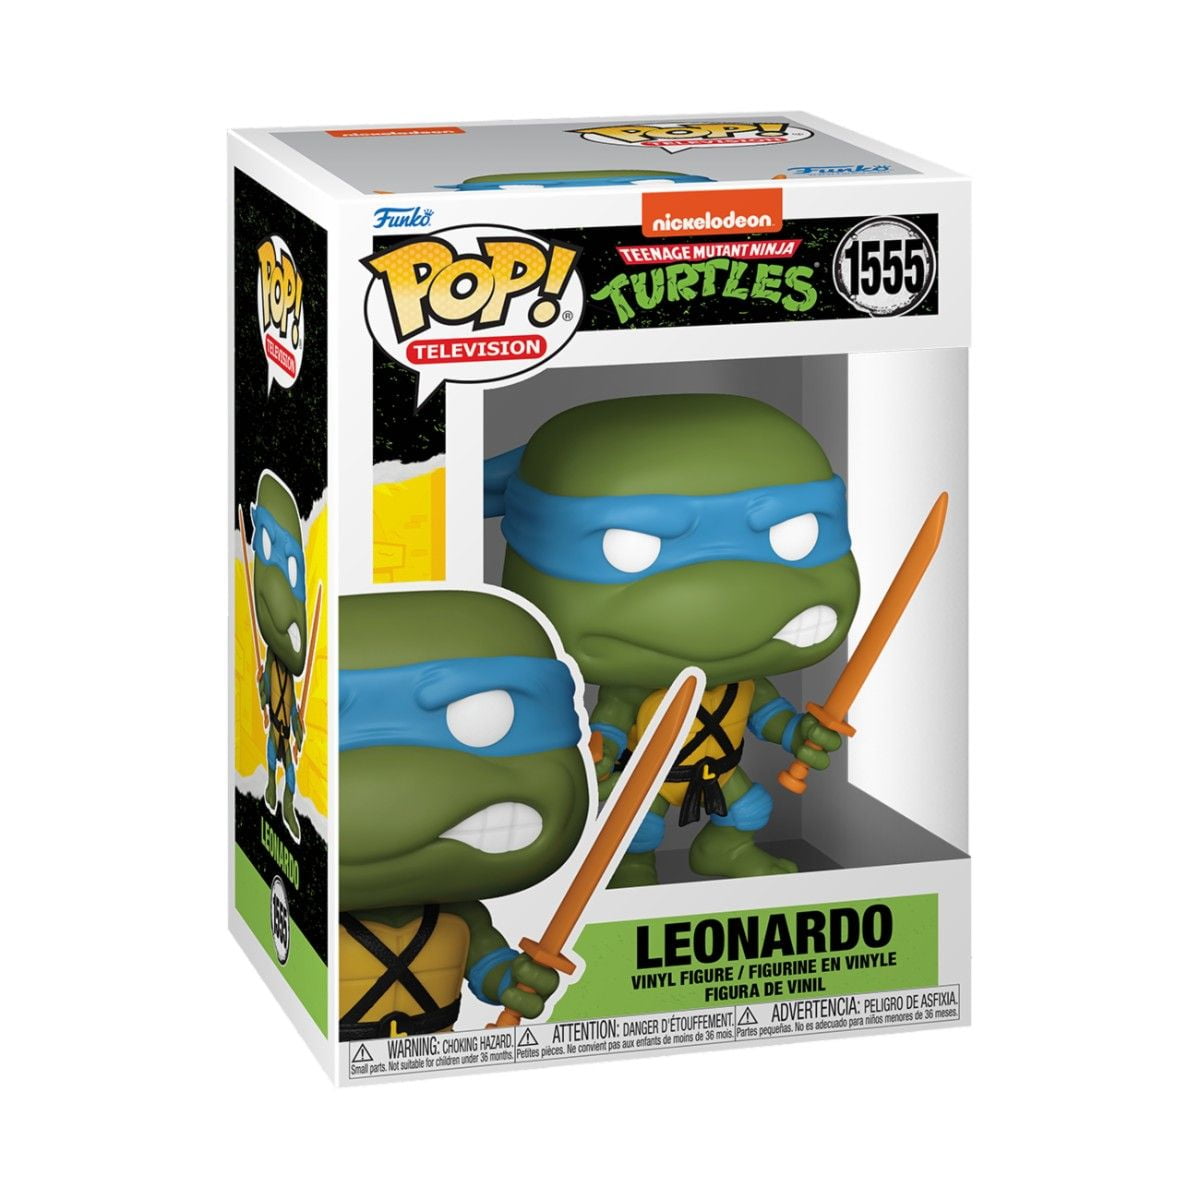 Leonardo - Teenage Mutant Ninja Turtles S4 - Funko POP! TV (1555)